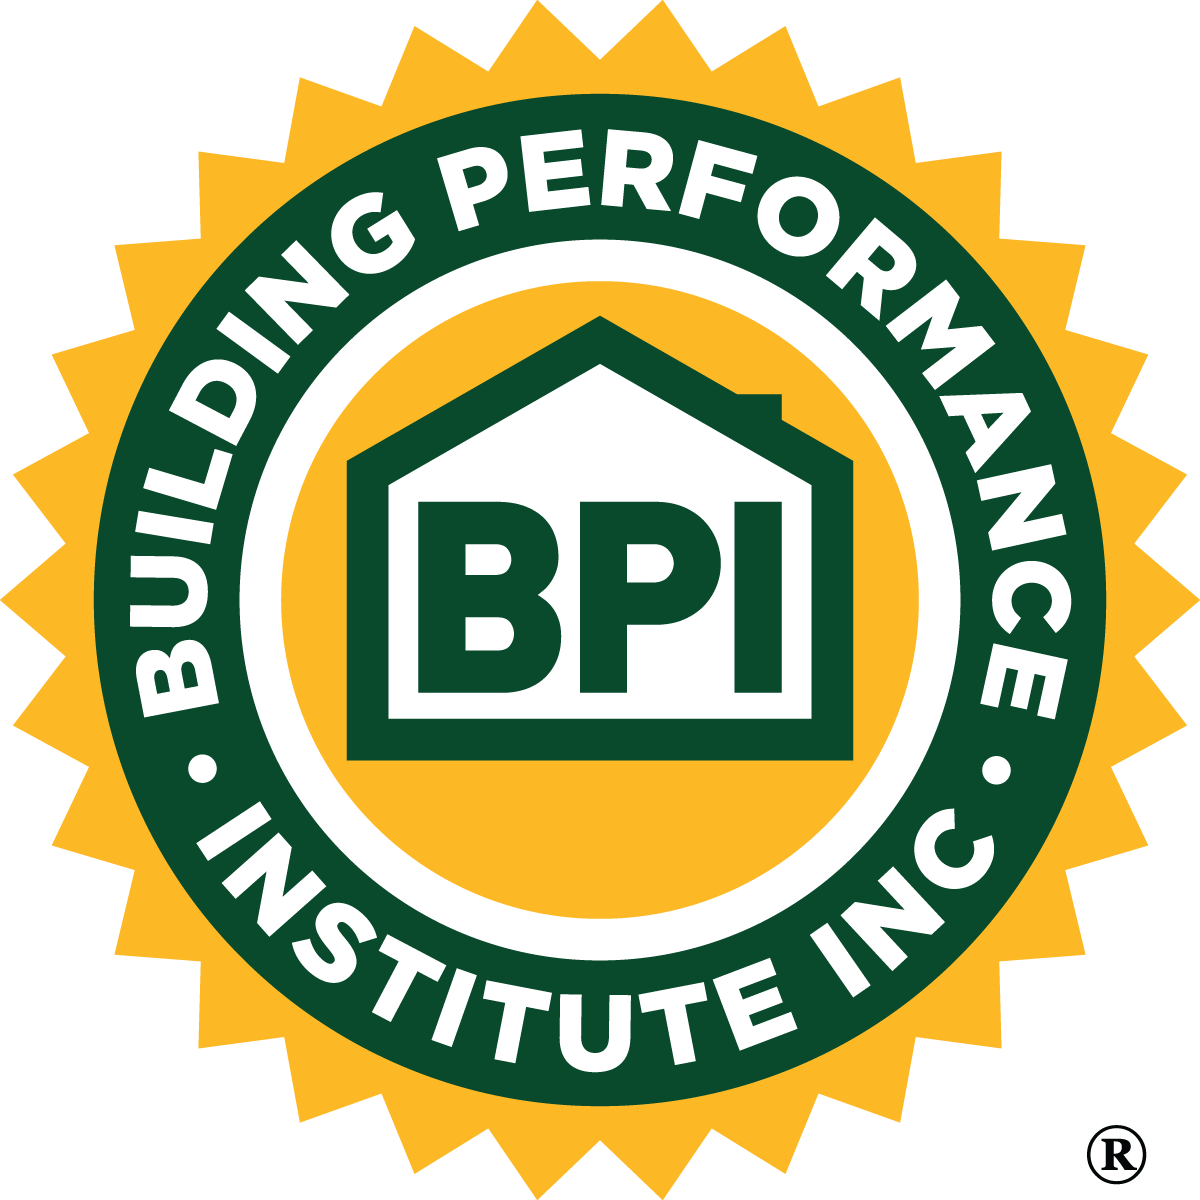 Building Performance Institute